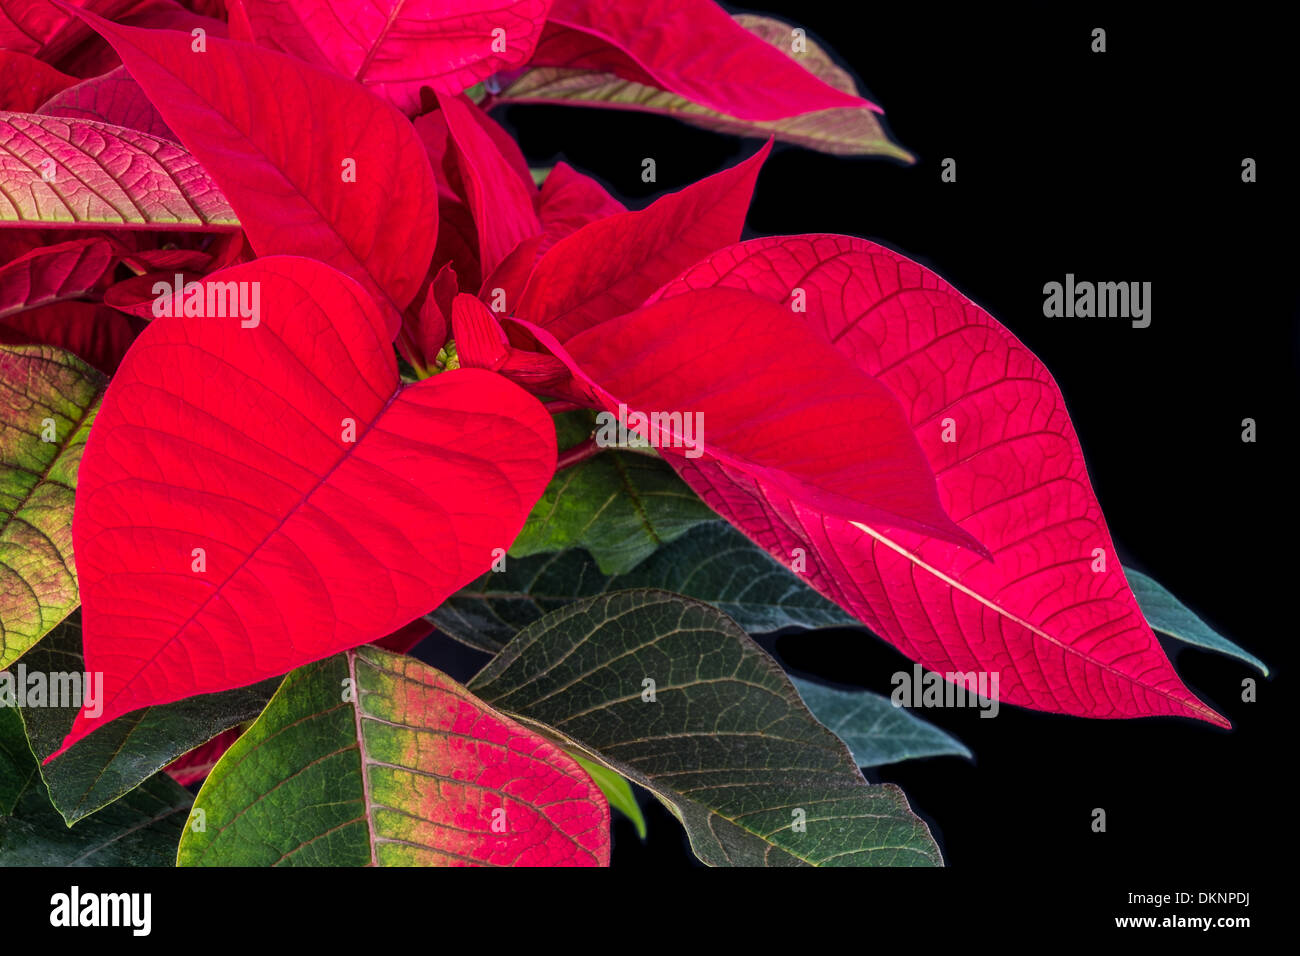 Nahaufnahme einer roten Weihnachtsstern Pflanze zeigt rote & grüne Blätter auf einem schwarzen Hintergrund. Stockfoto